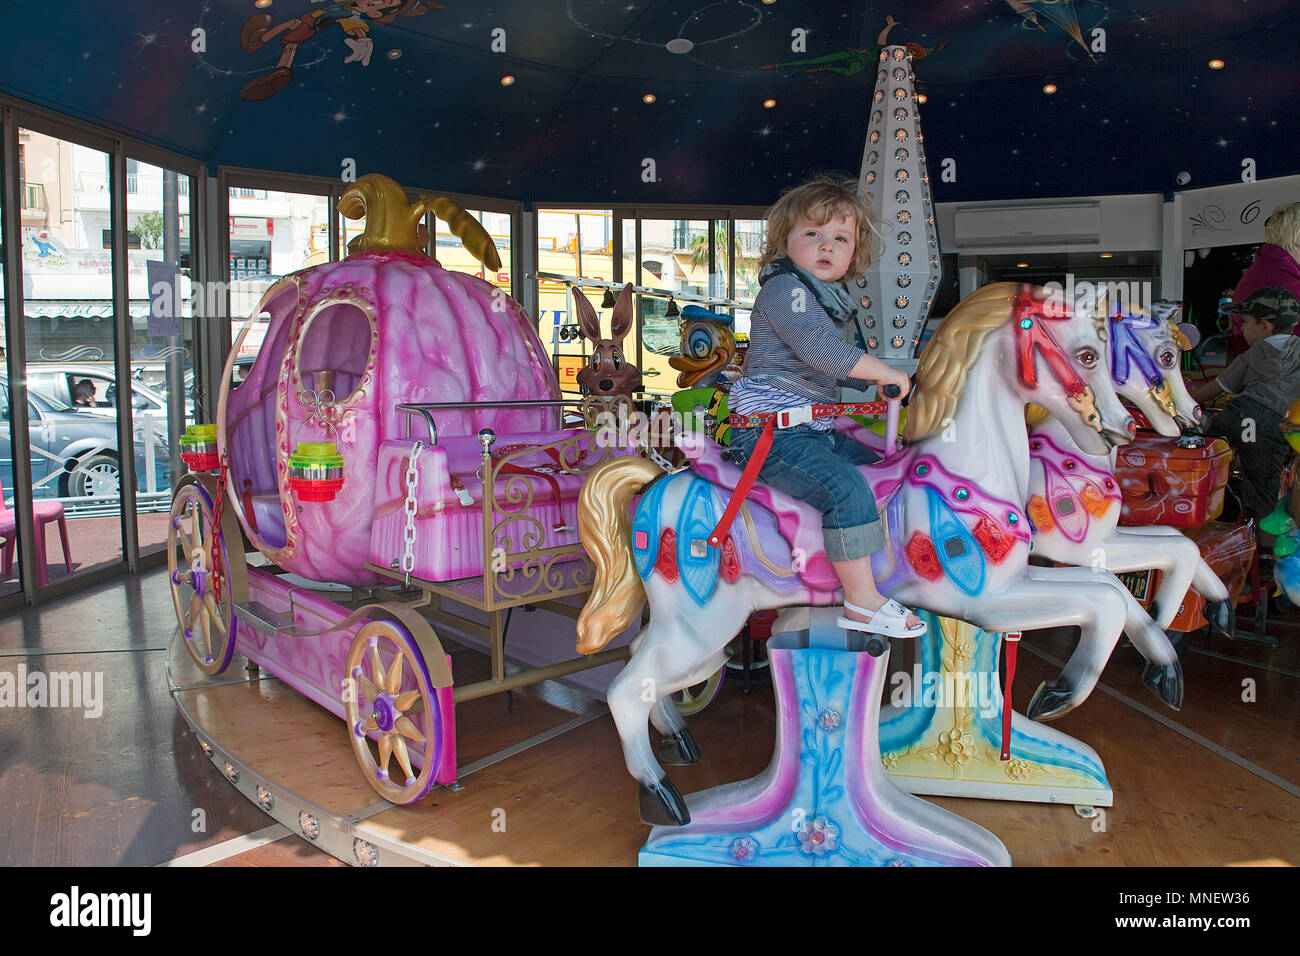 Kleines Mädchen auf einem Merry-go-round, Bandol, Côte d'Azur, Départements Var, Provence-Alpes-Côte d'Azur, Südfrankreich, Frankreich, Europa Stockfoto